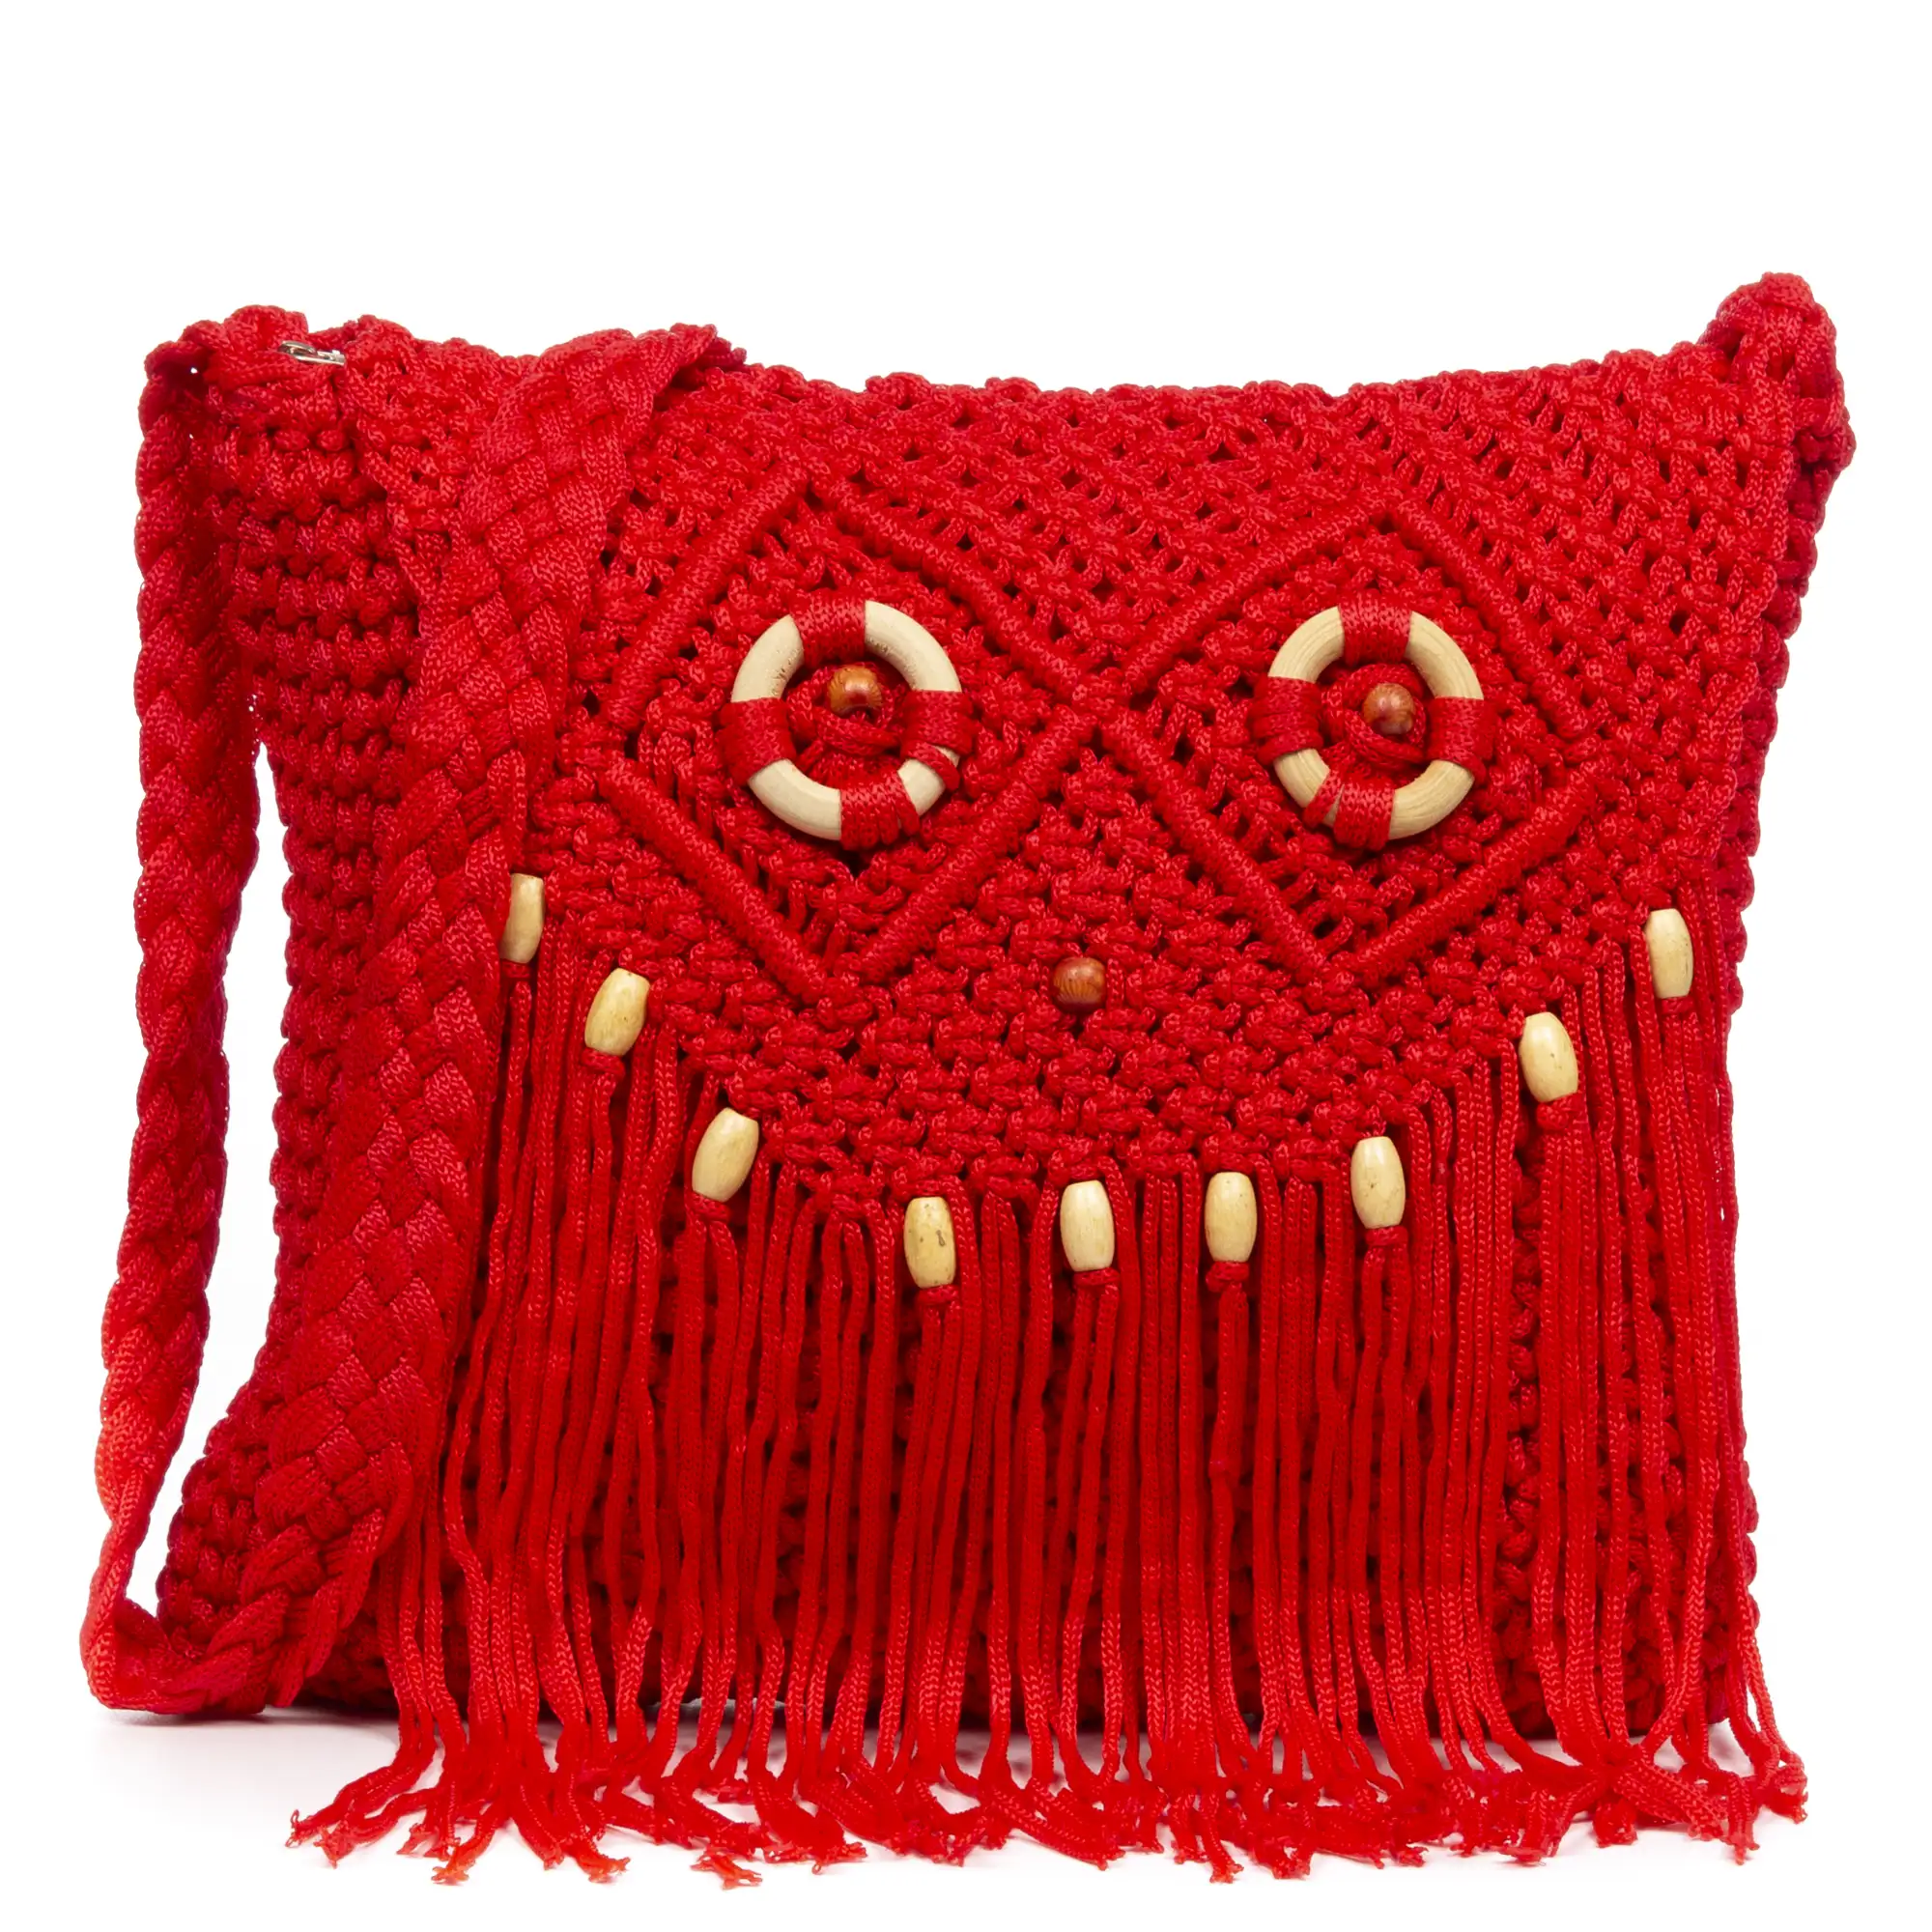  Ginosa Bolso bandolera Mujer. Tejido Algodón Crochet  